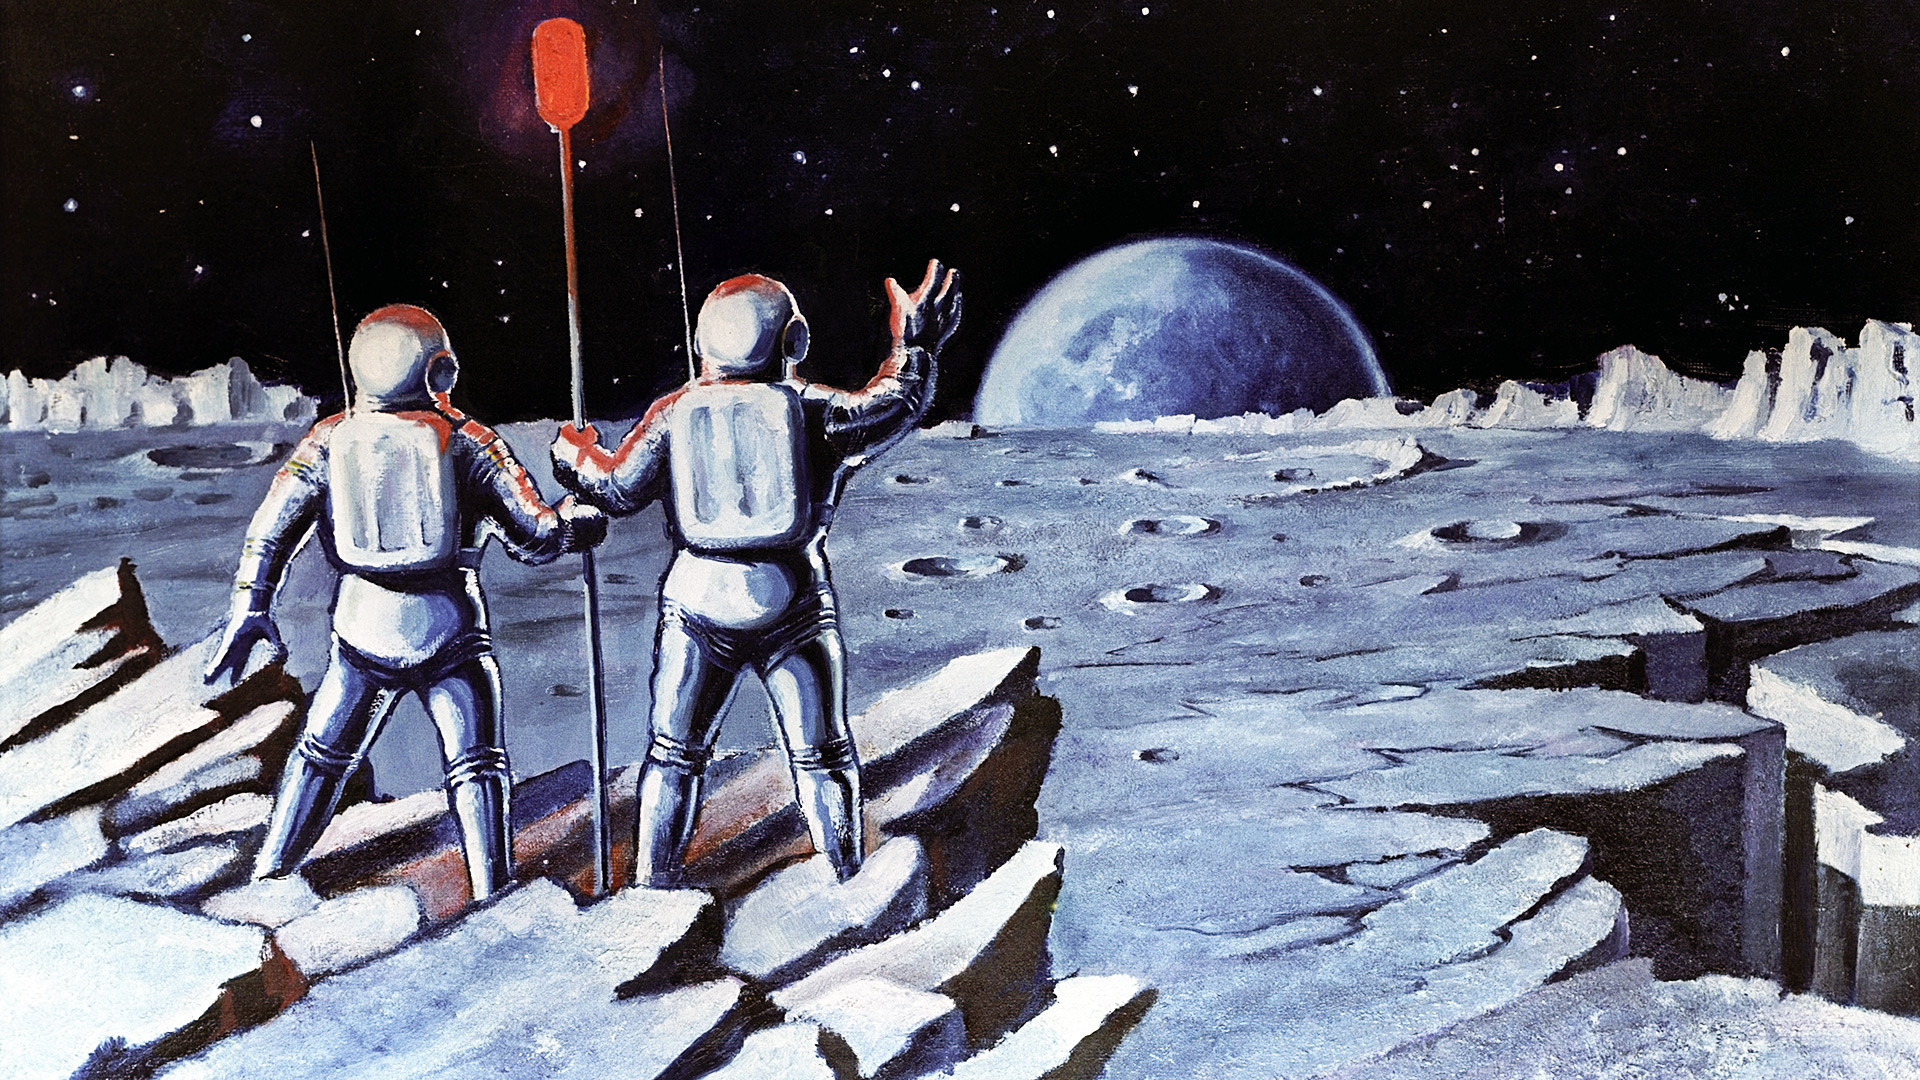 Rad "Ljudi na mjesecu", Alekseja Leonova, SF artista i sovjetskog kozmonauta